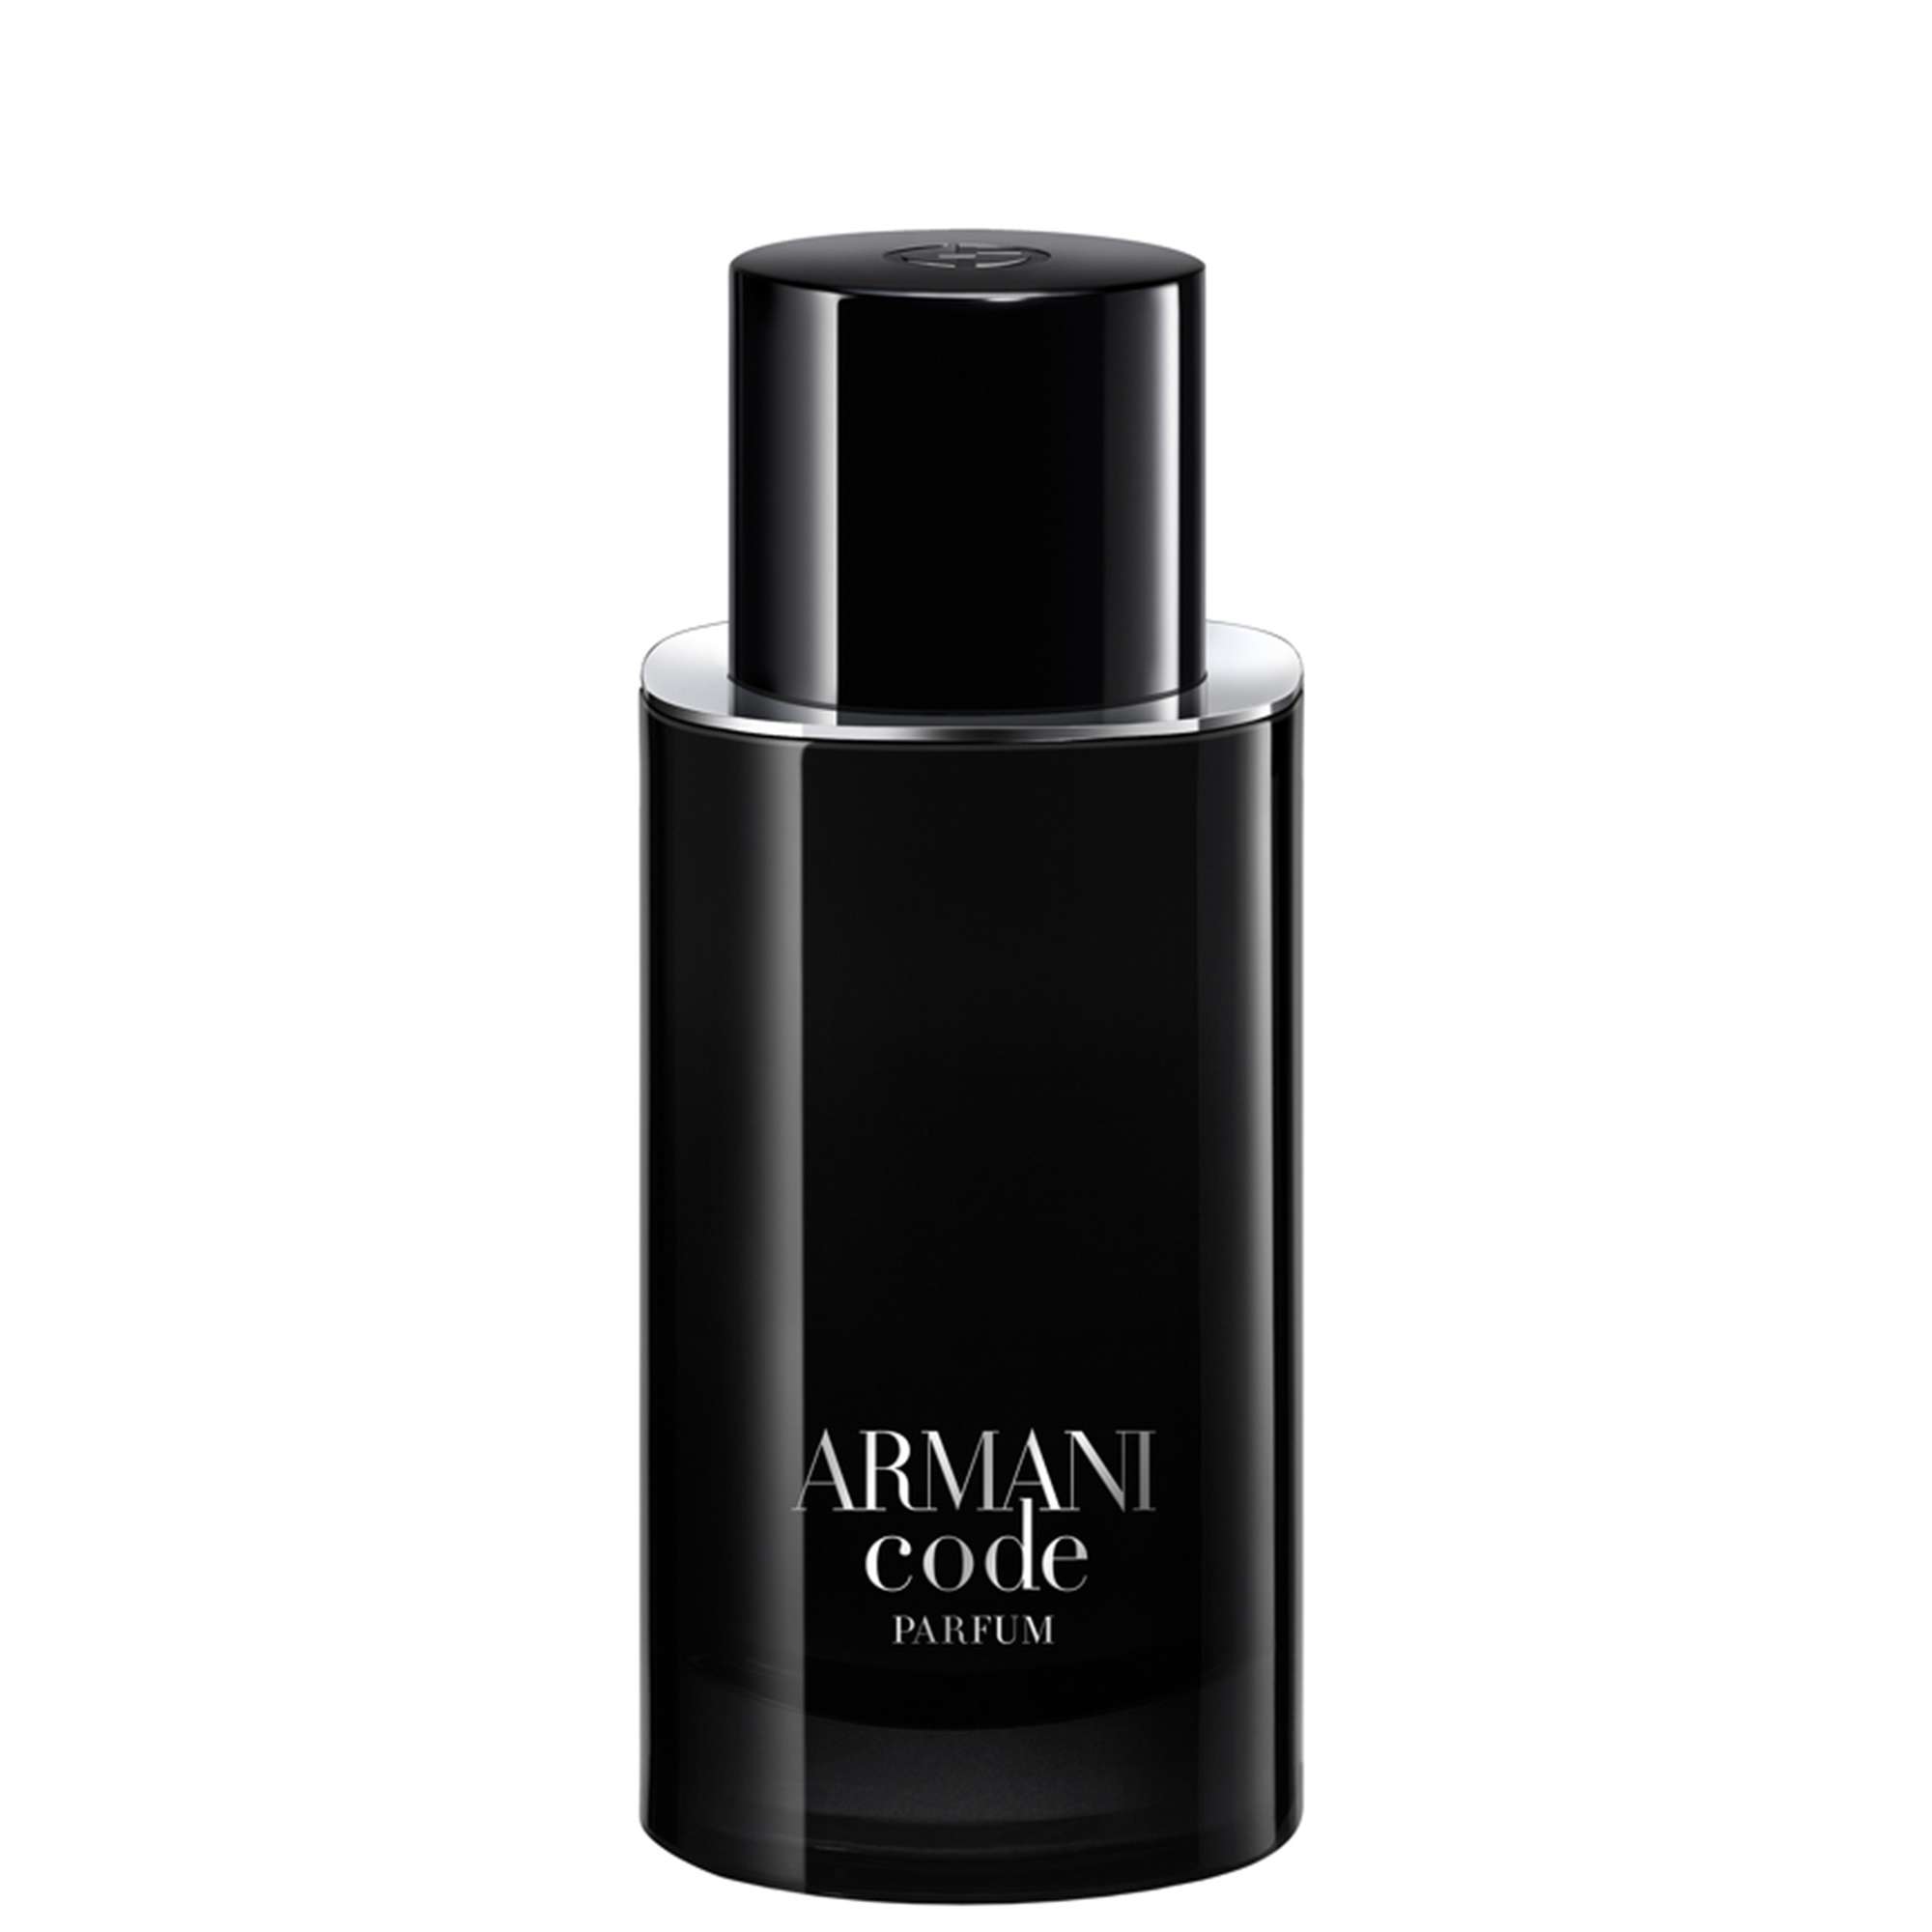 armani code le parfum eau de parfum spray 75ml